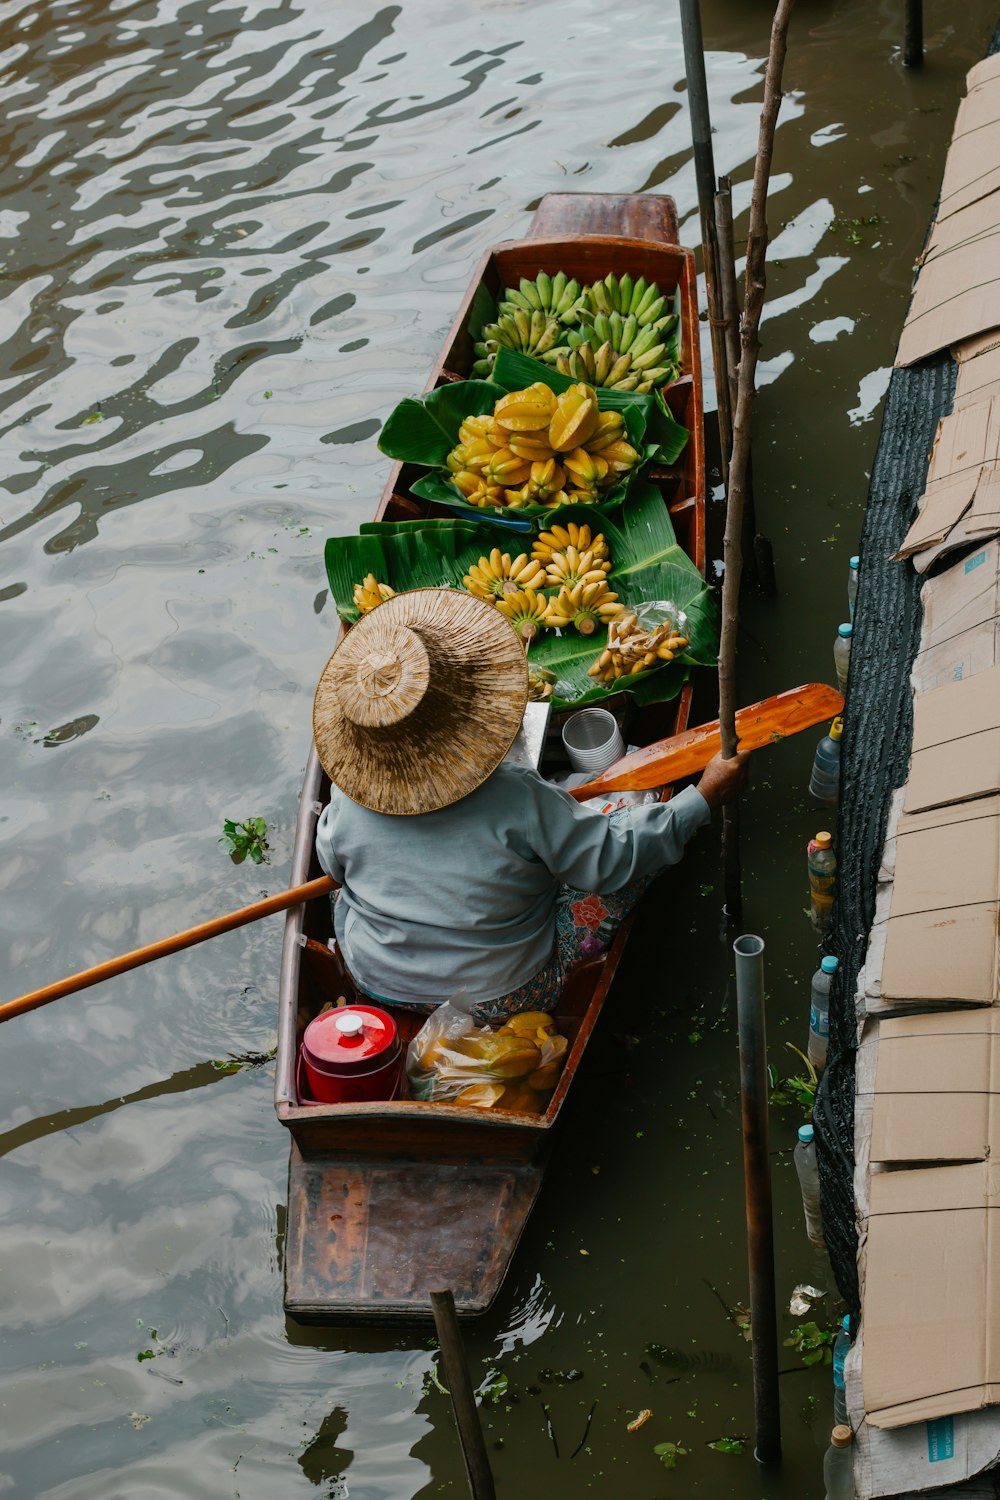 Una persona en un bote con plátanos y otros artículos